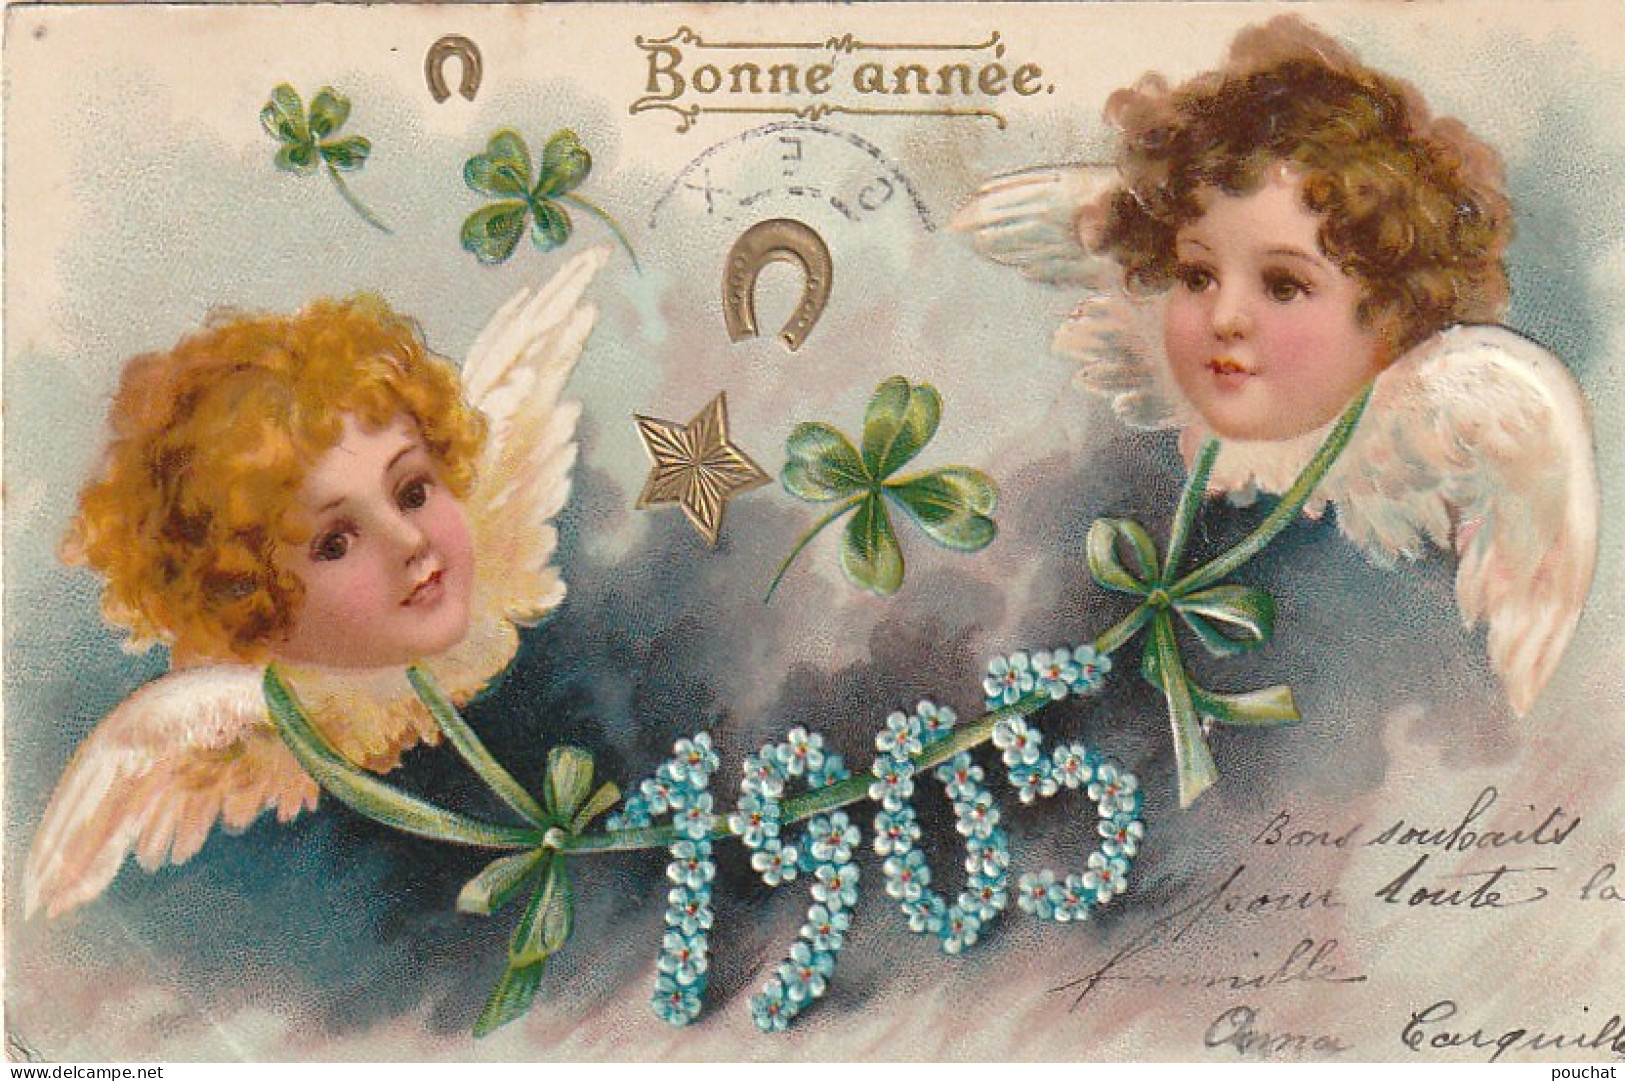 HO 22 - CARTE  GAUFREE " BONNE  ANNEE  1905" - VISAGES D'ANGELOTS AVEC TREFLES , FER A CHEVAL ET ETOILE DORES- 2 SCANS  - Nieuwjaar